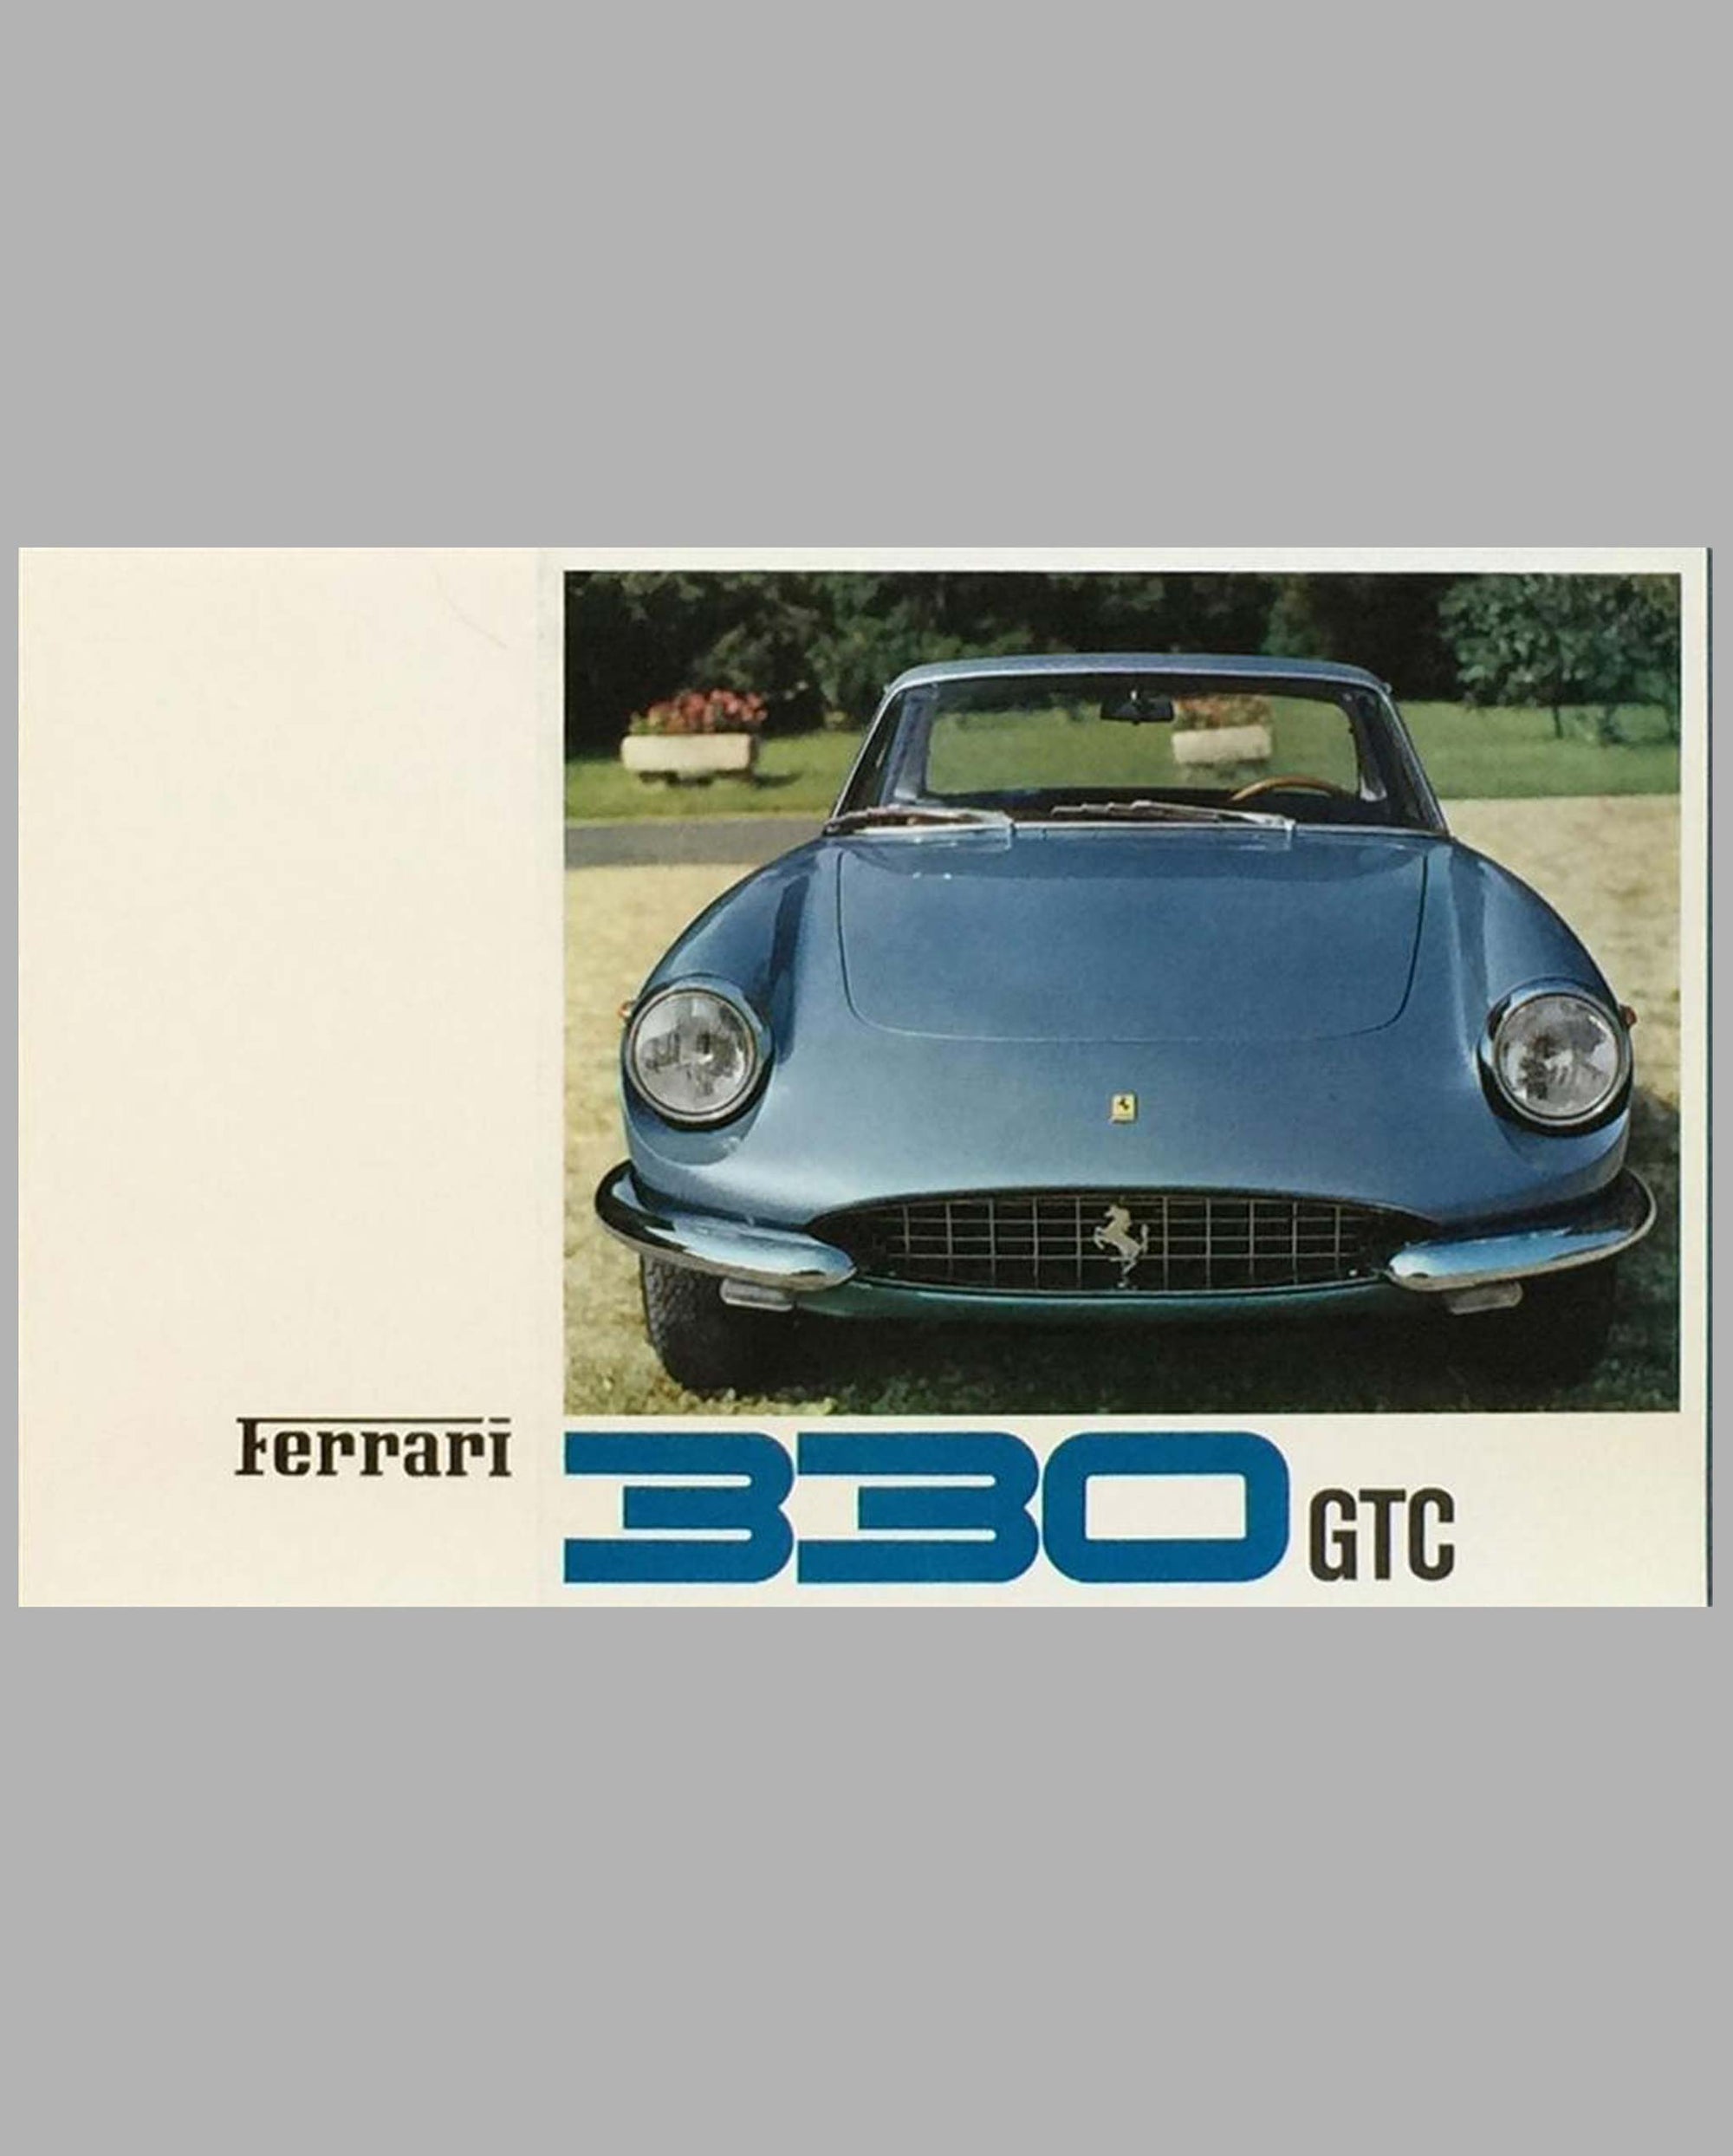 Ferrari 330 GTC original factory brochure, Cover